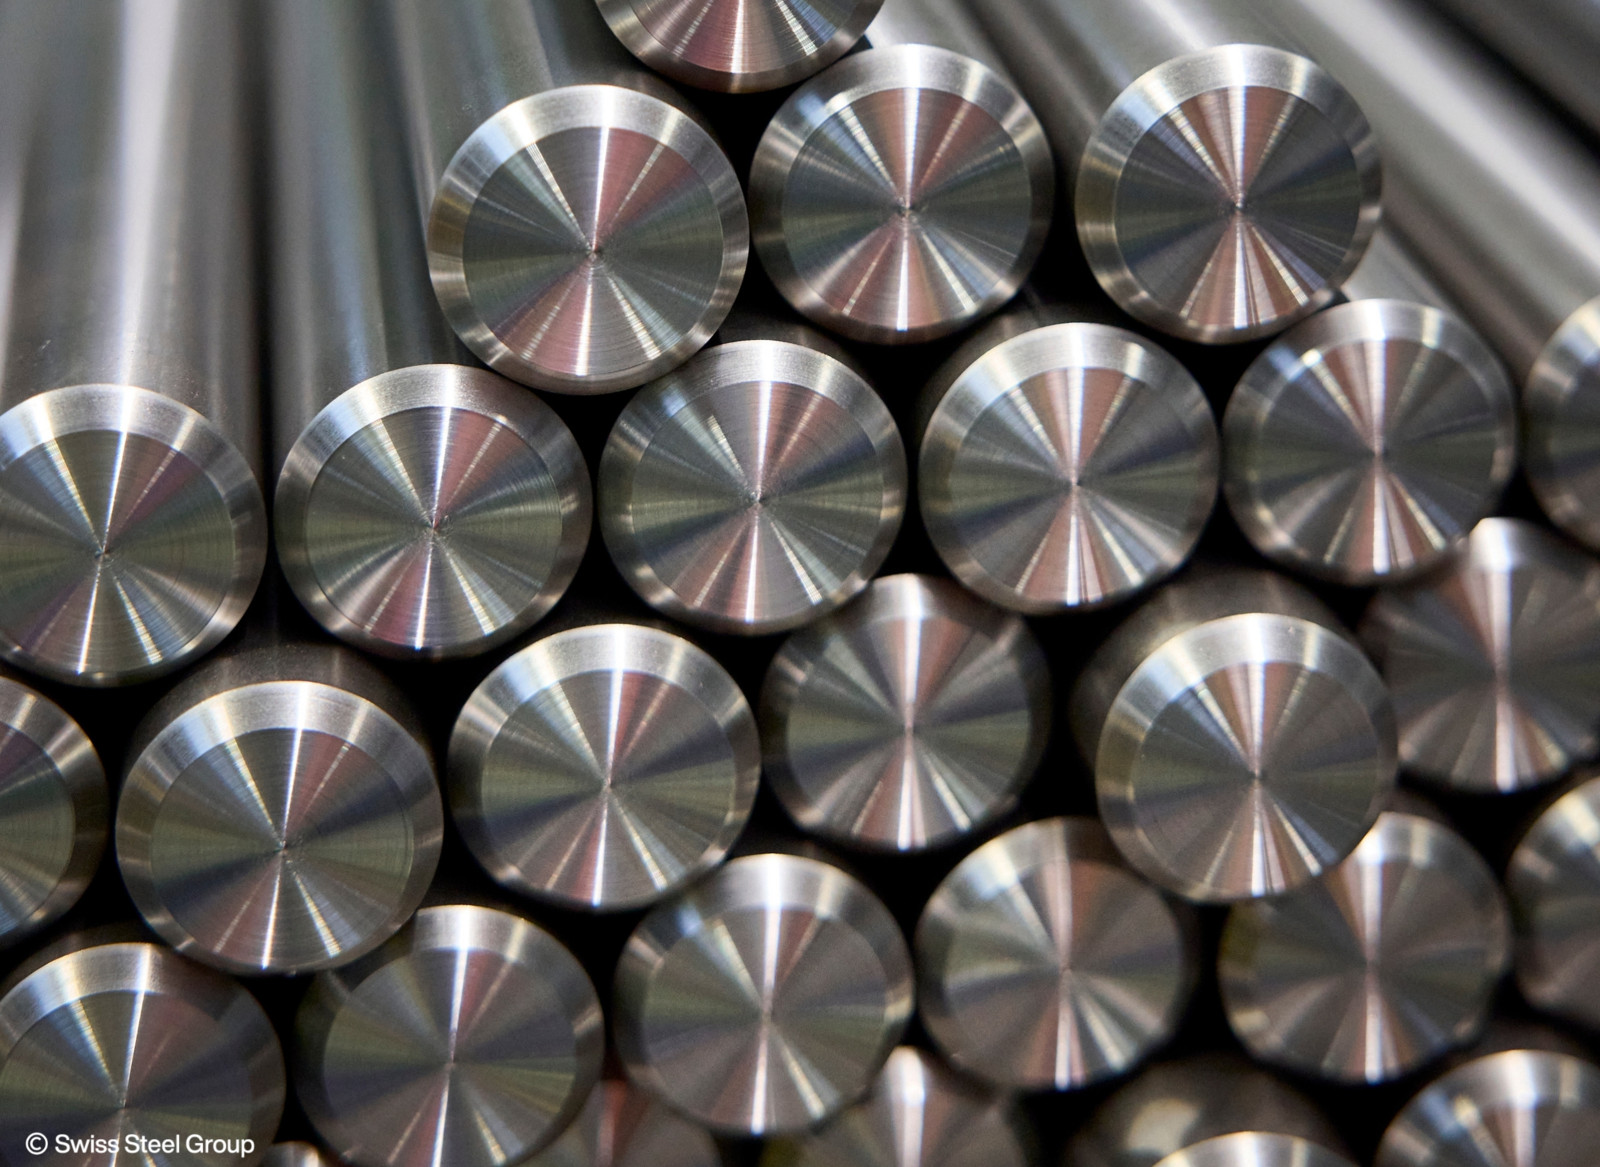 „Wir sind stolz darauf heute in der Lage zu sein unseren Kunden Stahl anzubieten, der ausschließlich mit dem Einsatz schweizerischen Wasserstroms geschmolzen wurde“, so Frank Koch, CEO der Swiss Steel Group AG anlässlich der Umstellung auf Ökostrom.